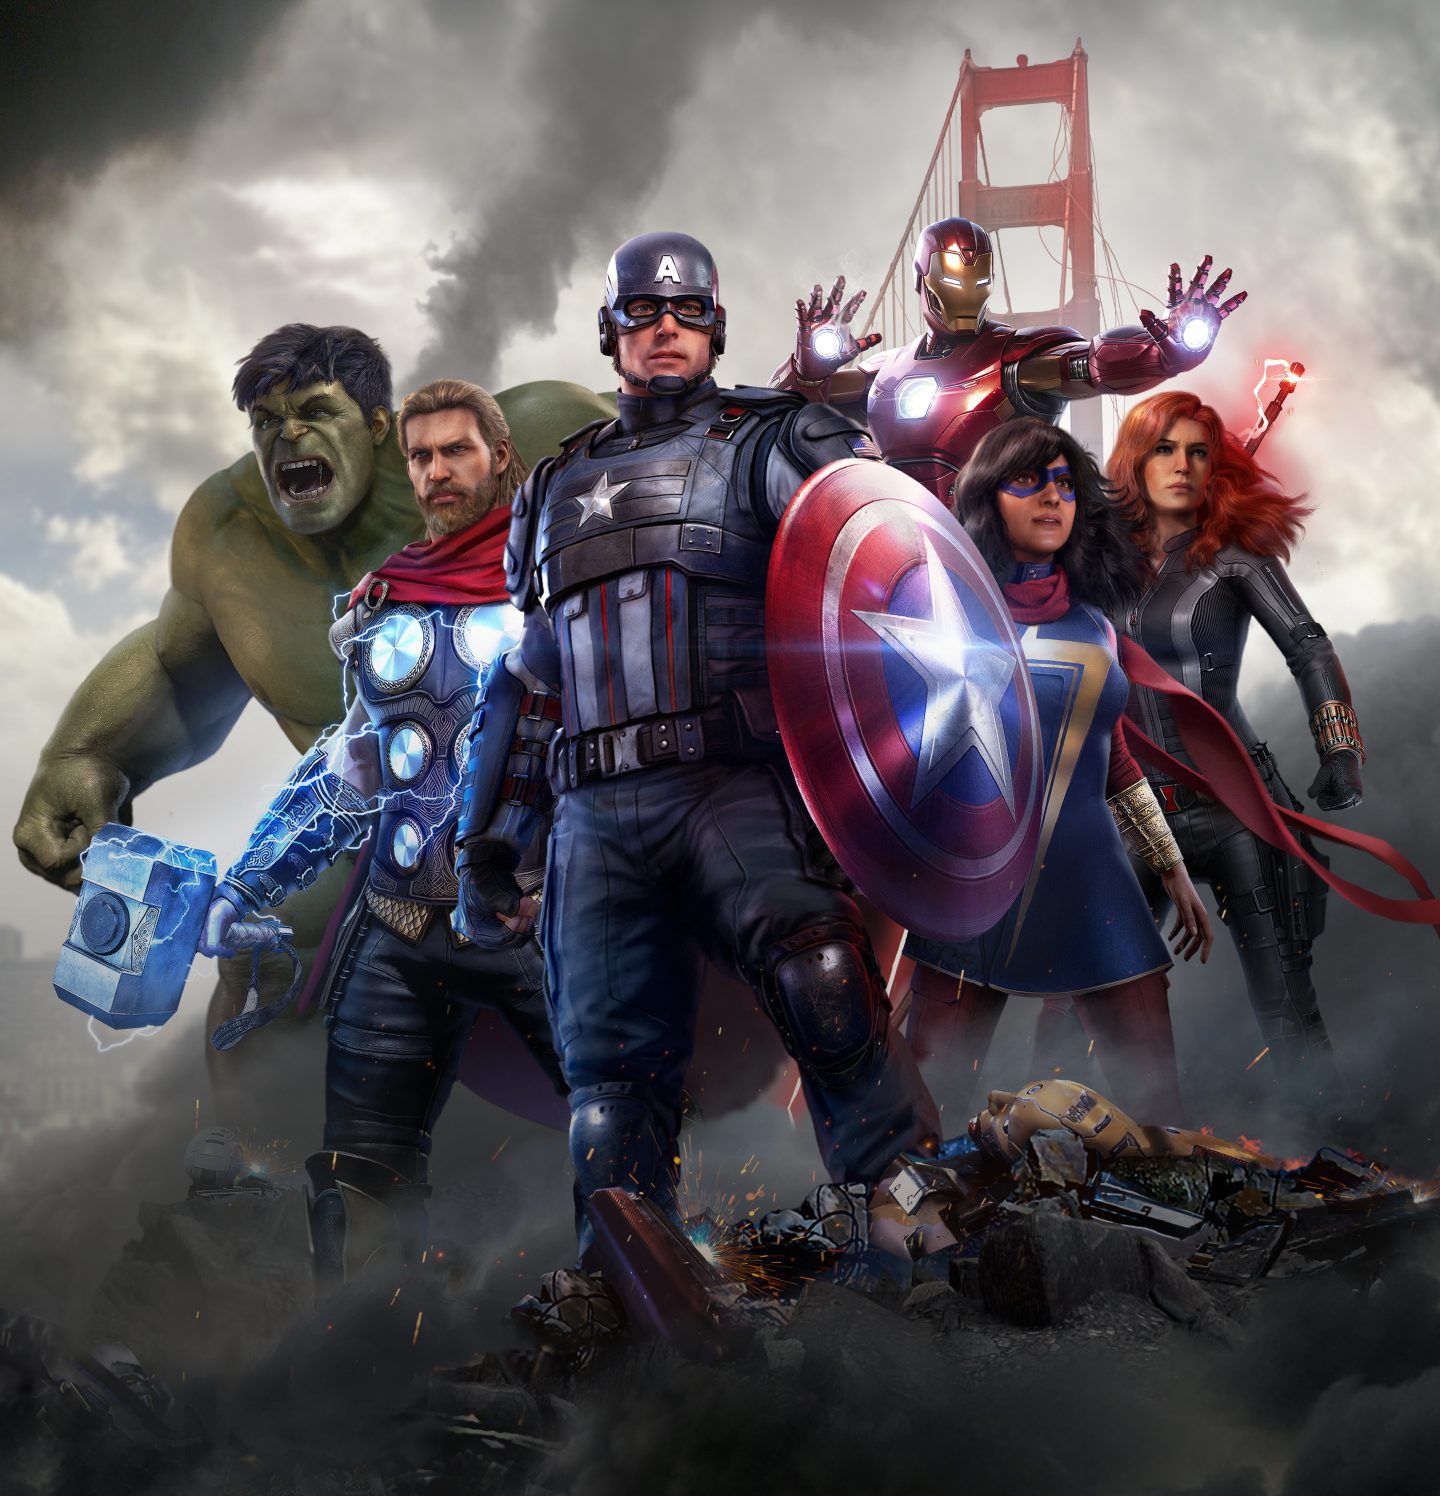 アベンジャーズ再集結 スーパーヒーローになる 夢が叶うゲーム Marvel S Avengers 発売間近 新着ニュース Banger